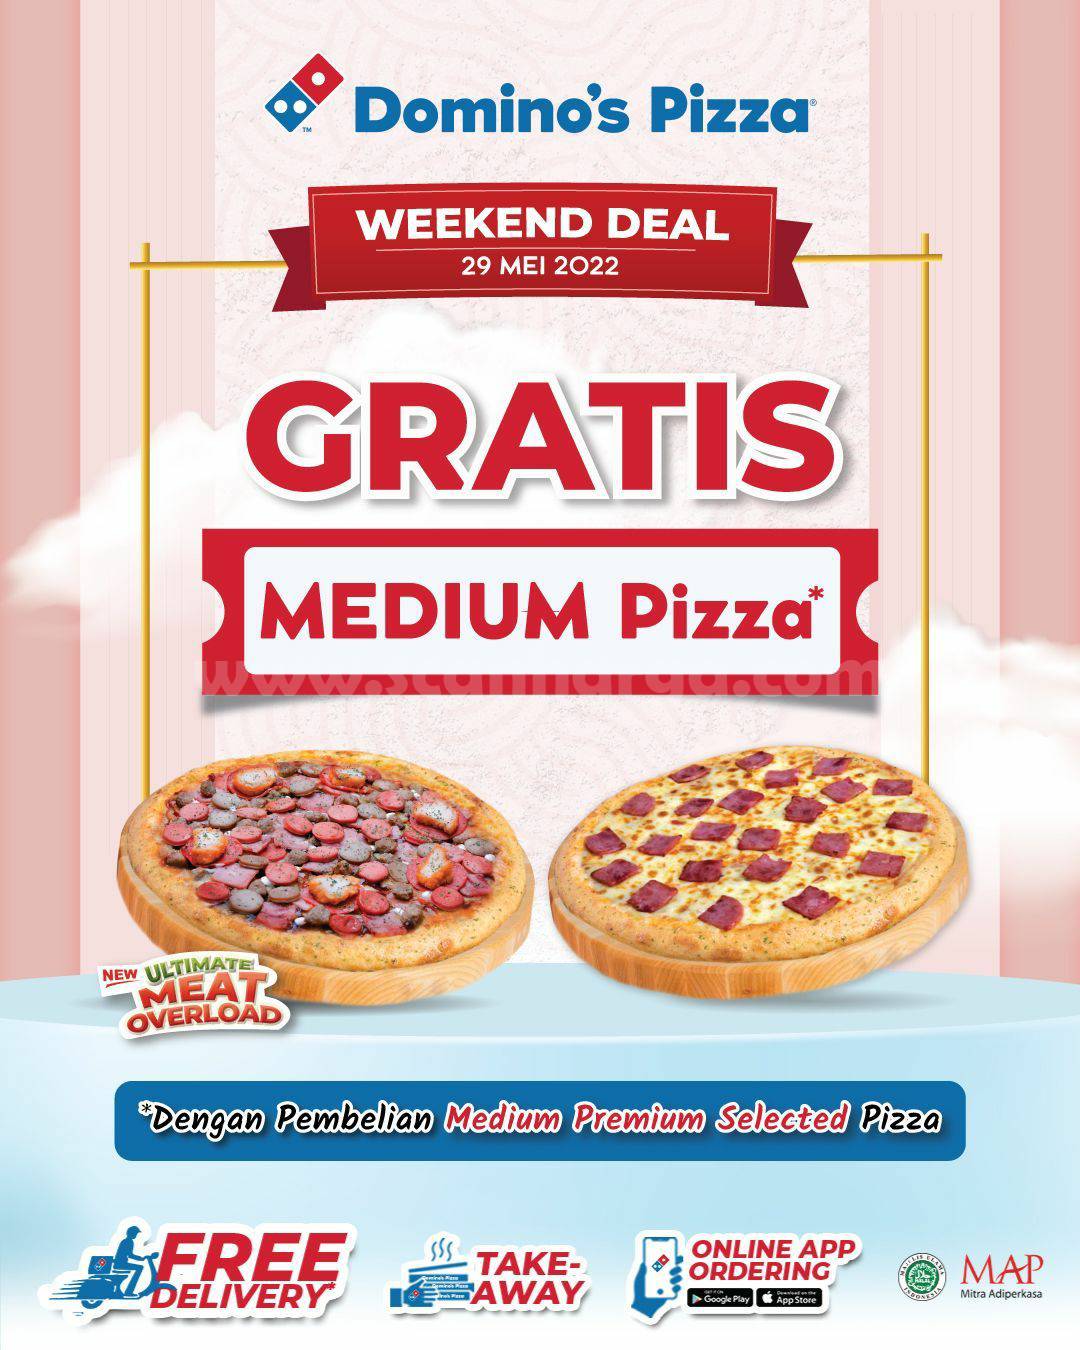 Promo Domino's Pizza Weekend Deal - Gratis Medium Pizza